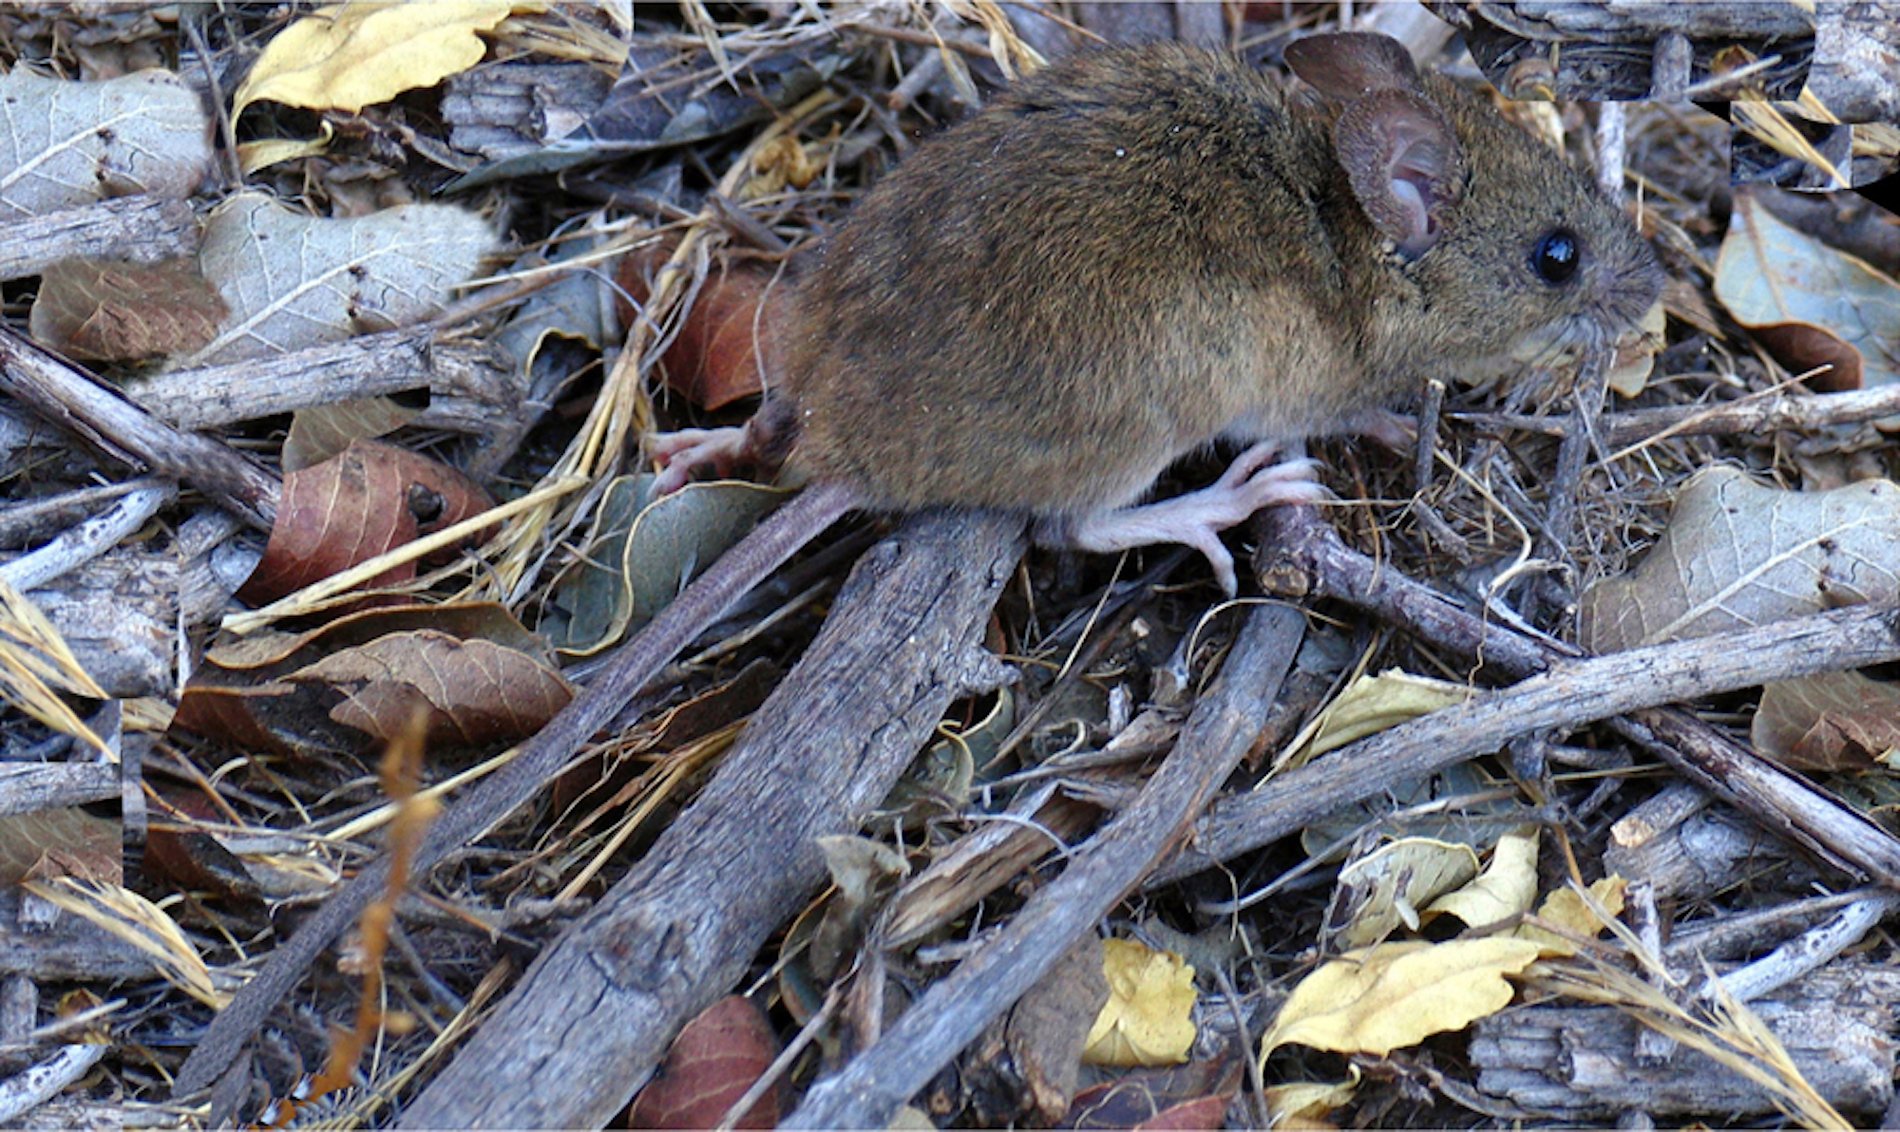 ¿Qué especie de rata es la mayor portadora de hantavirus?